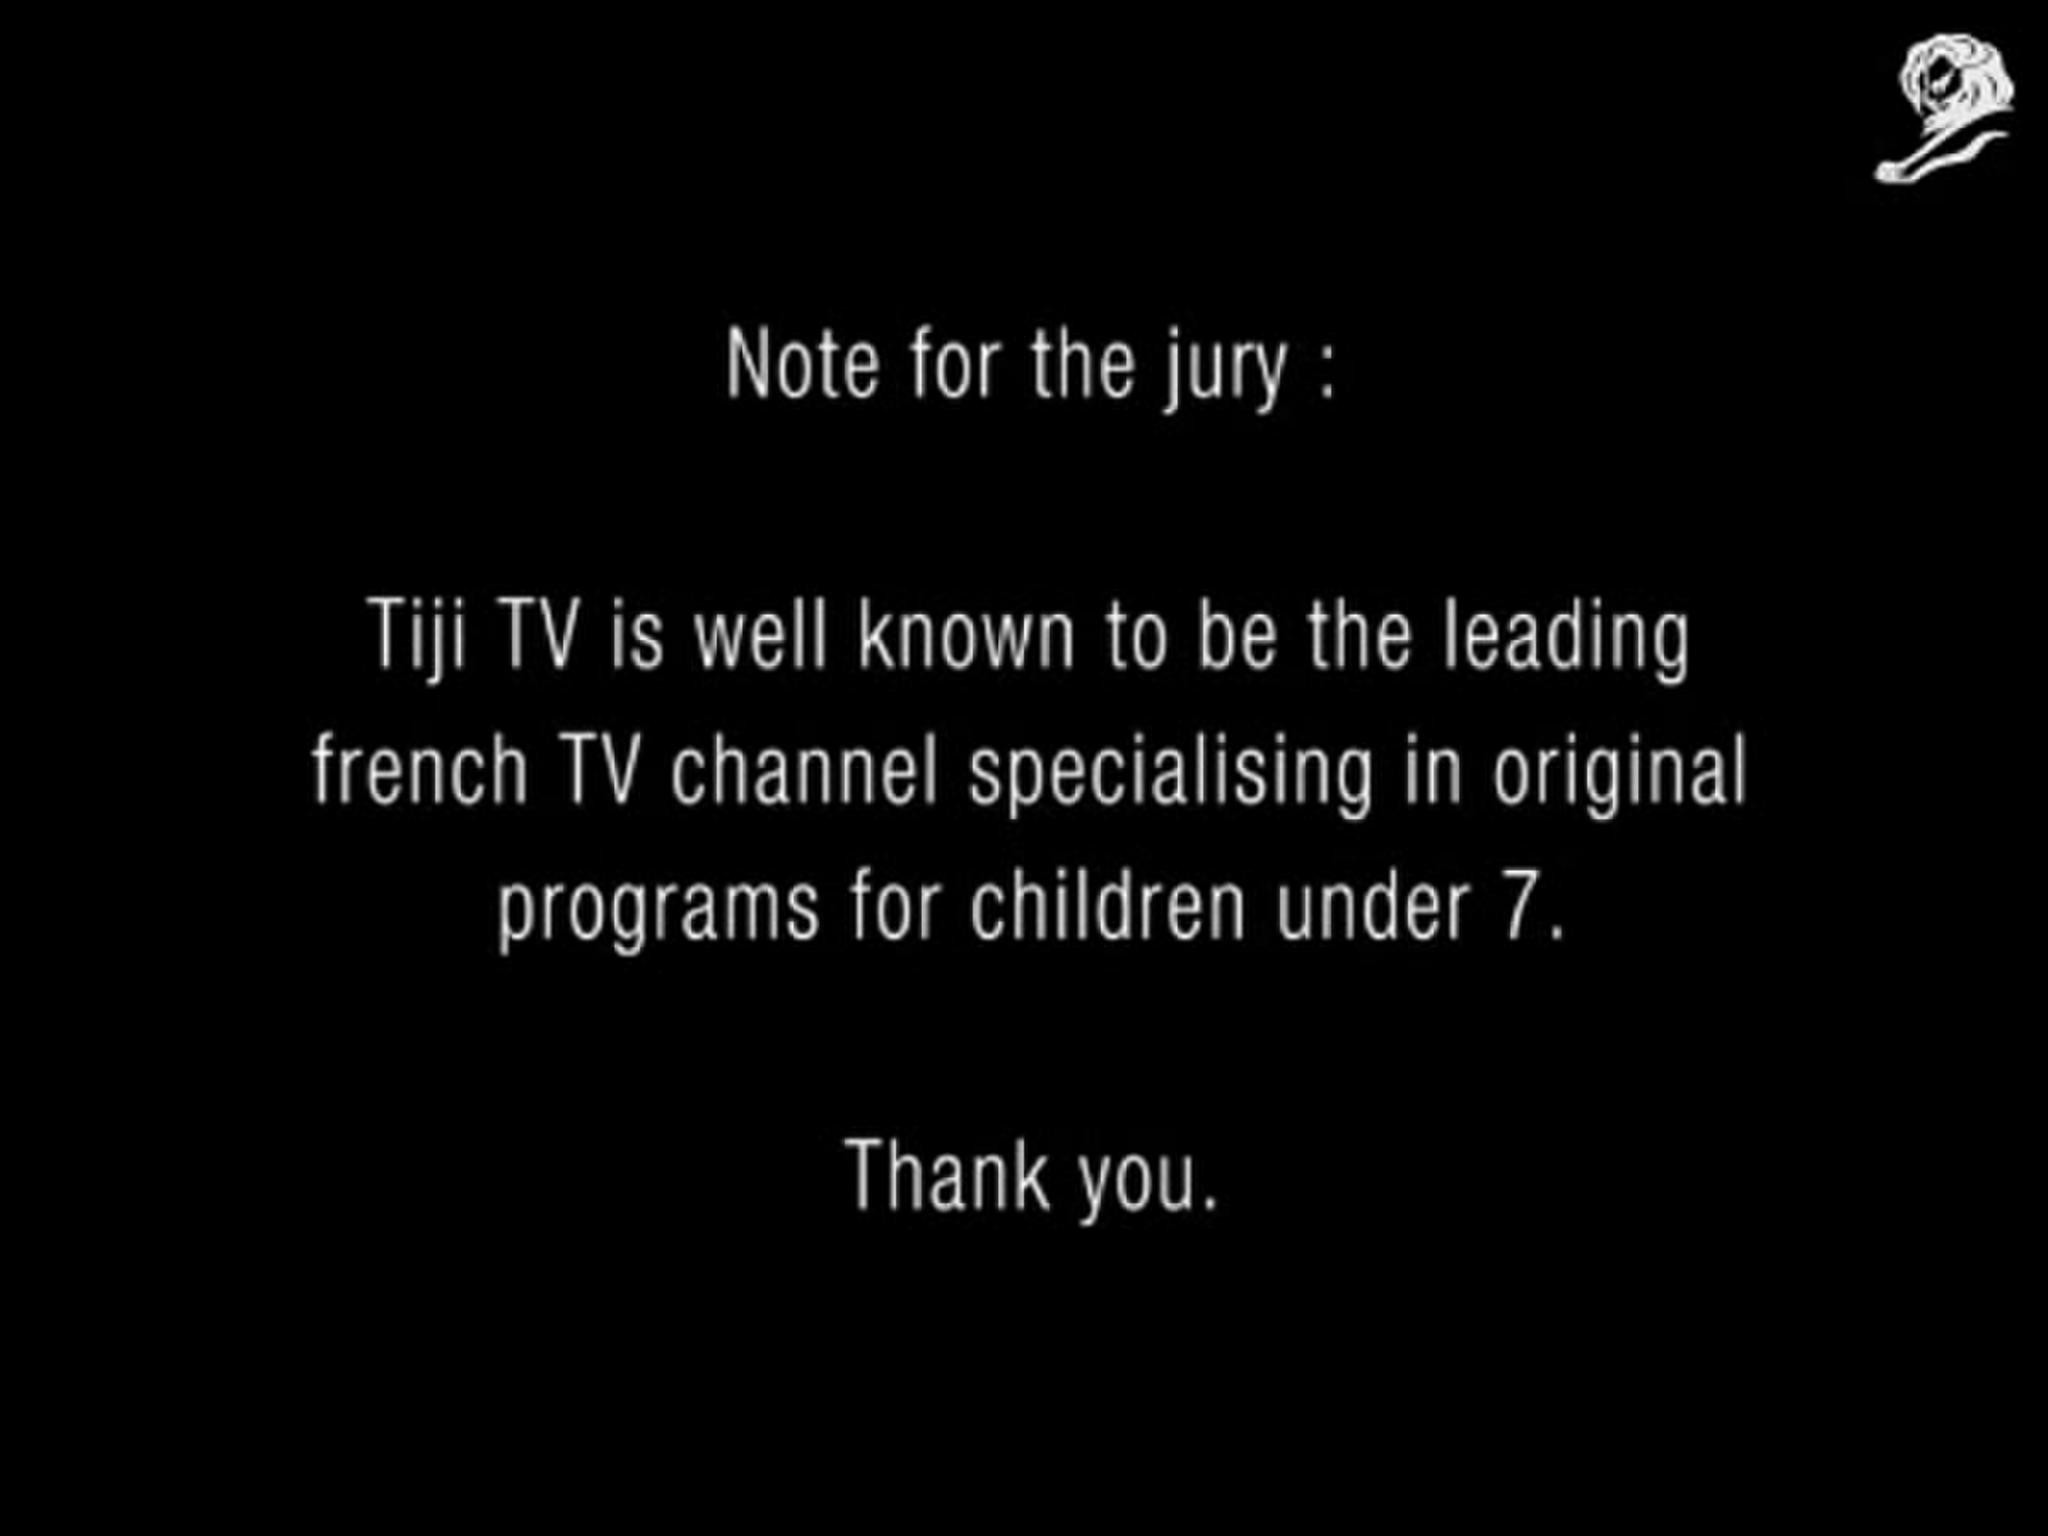 TIJI TV CHANNEL